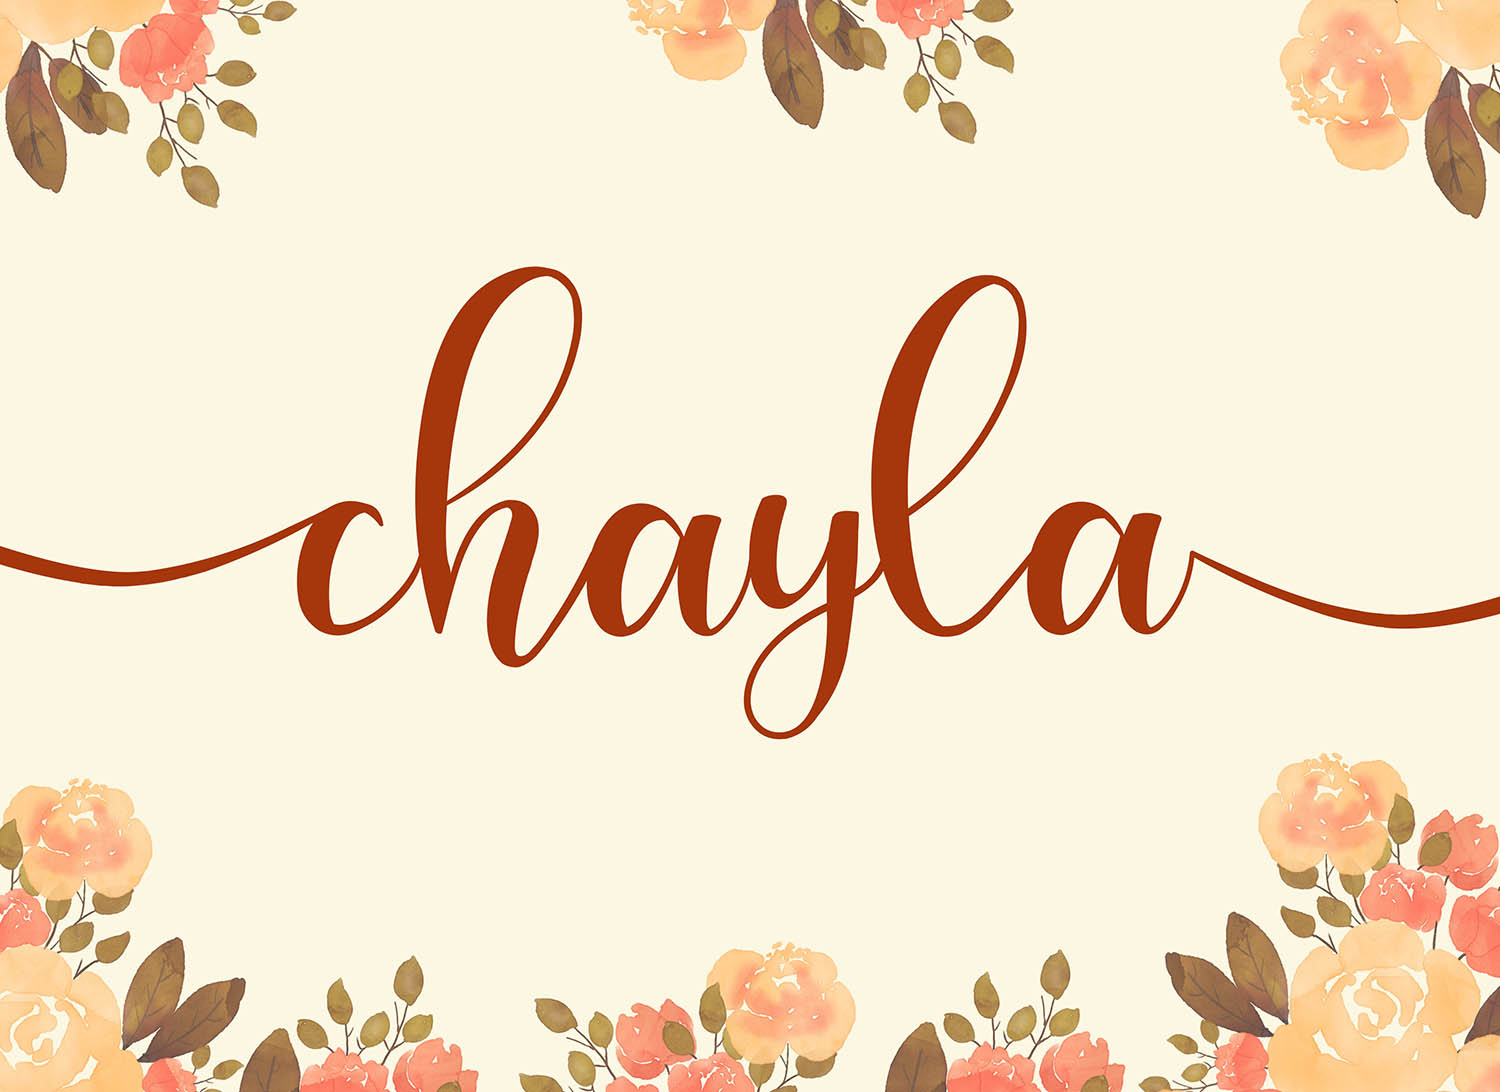 Chayla Free Font